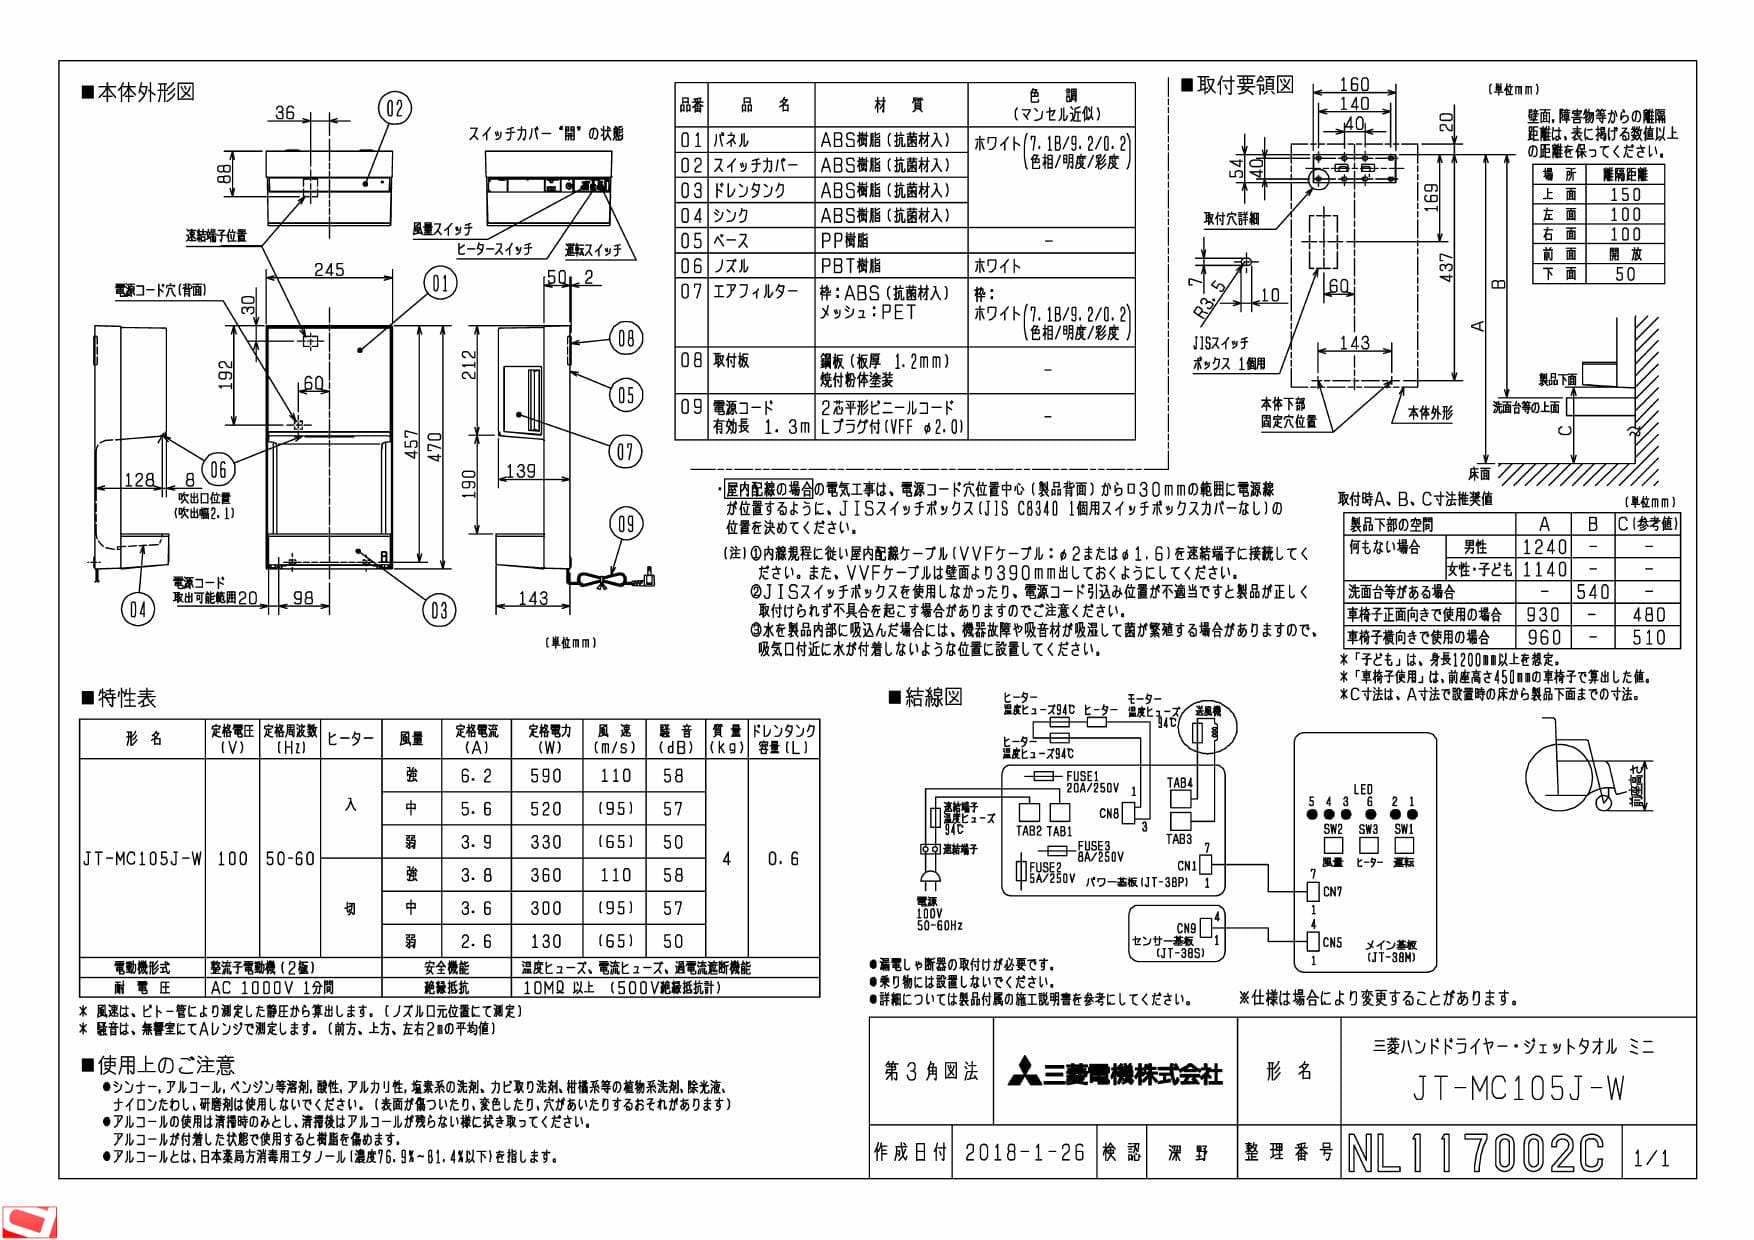 三菱電機 JT-MC105J-W納入仕様図 | 通販 プロストア ダイレクト